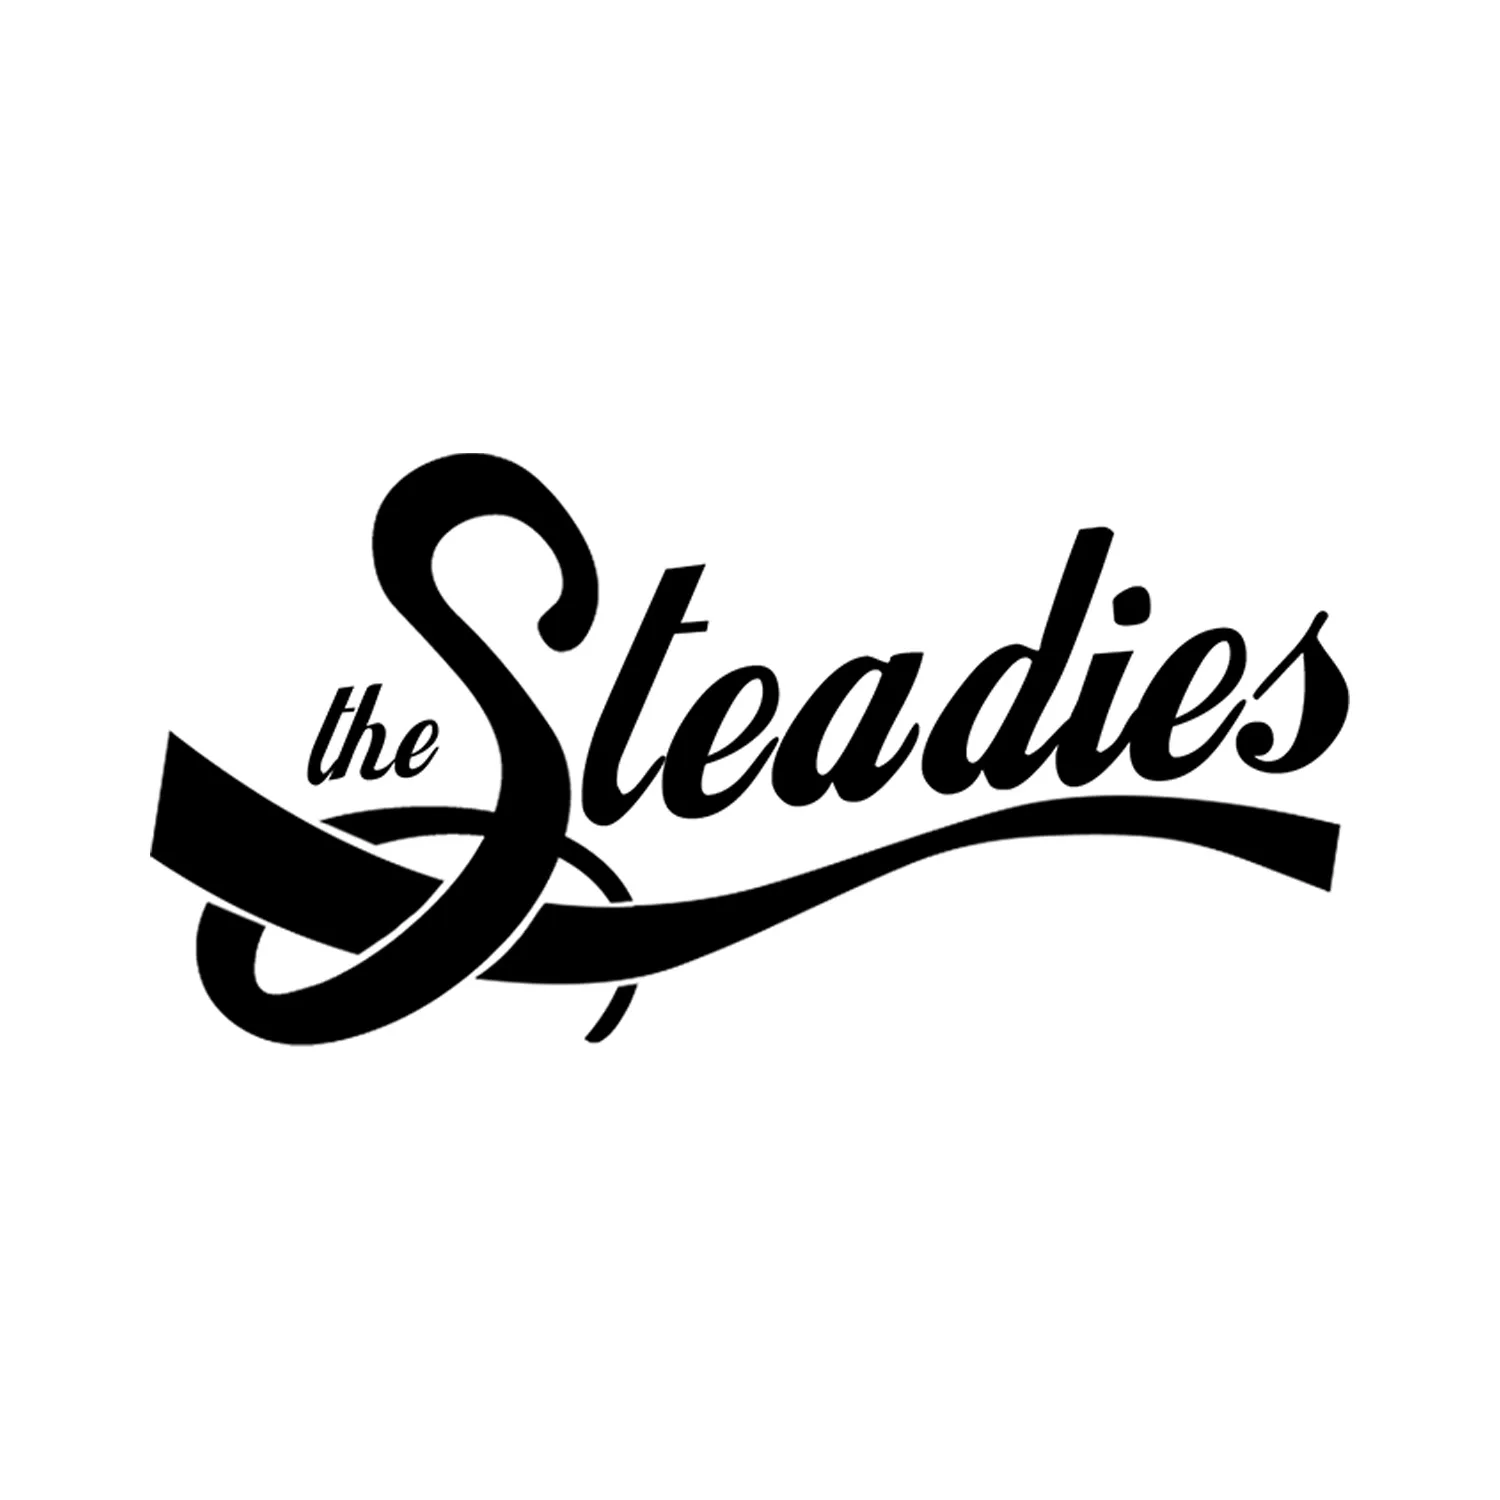 The Steadies + Alex Paquette + Les Happycuriens